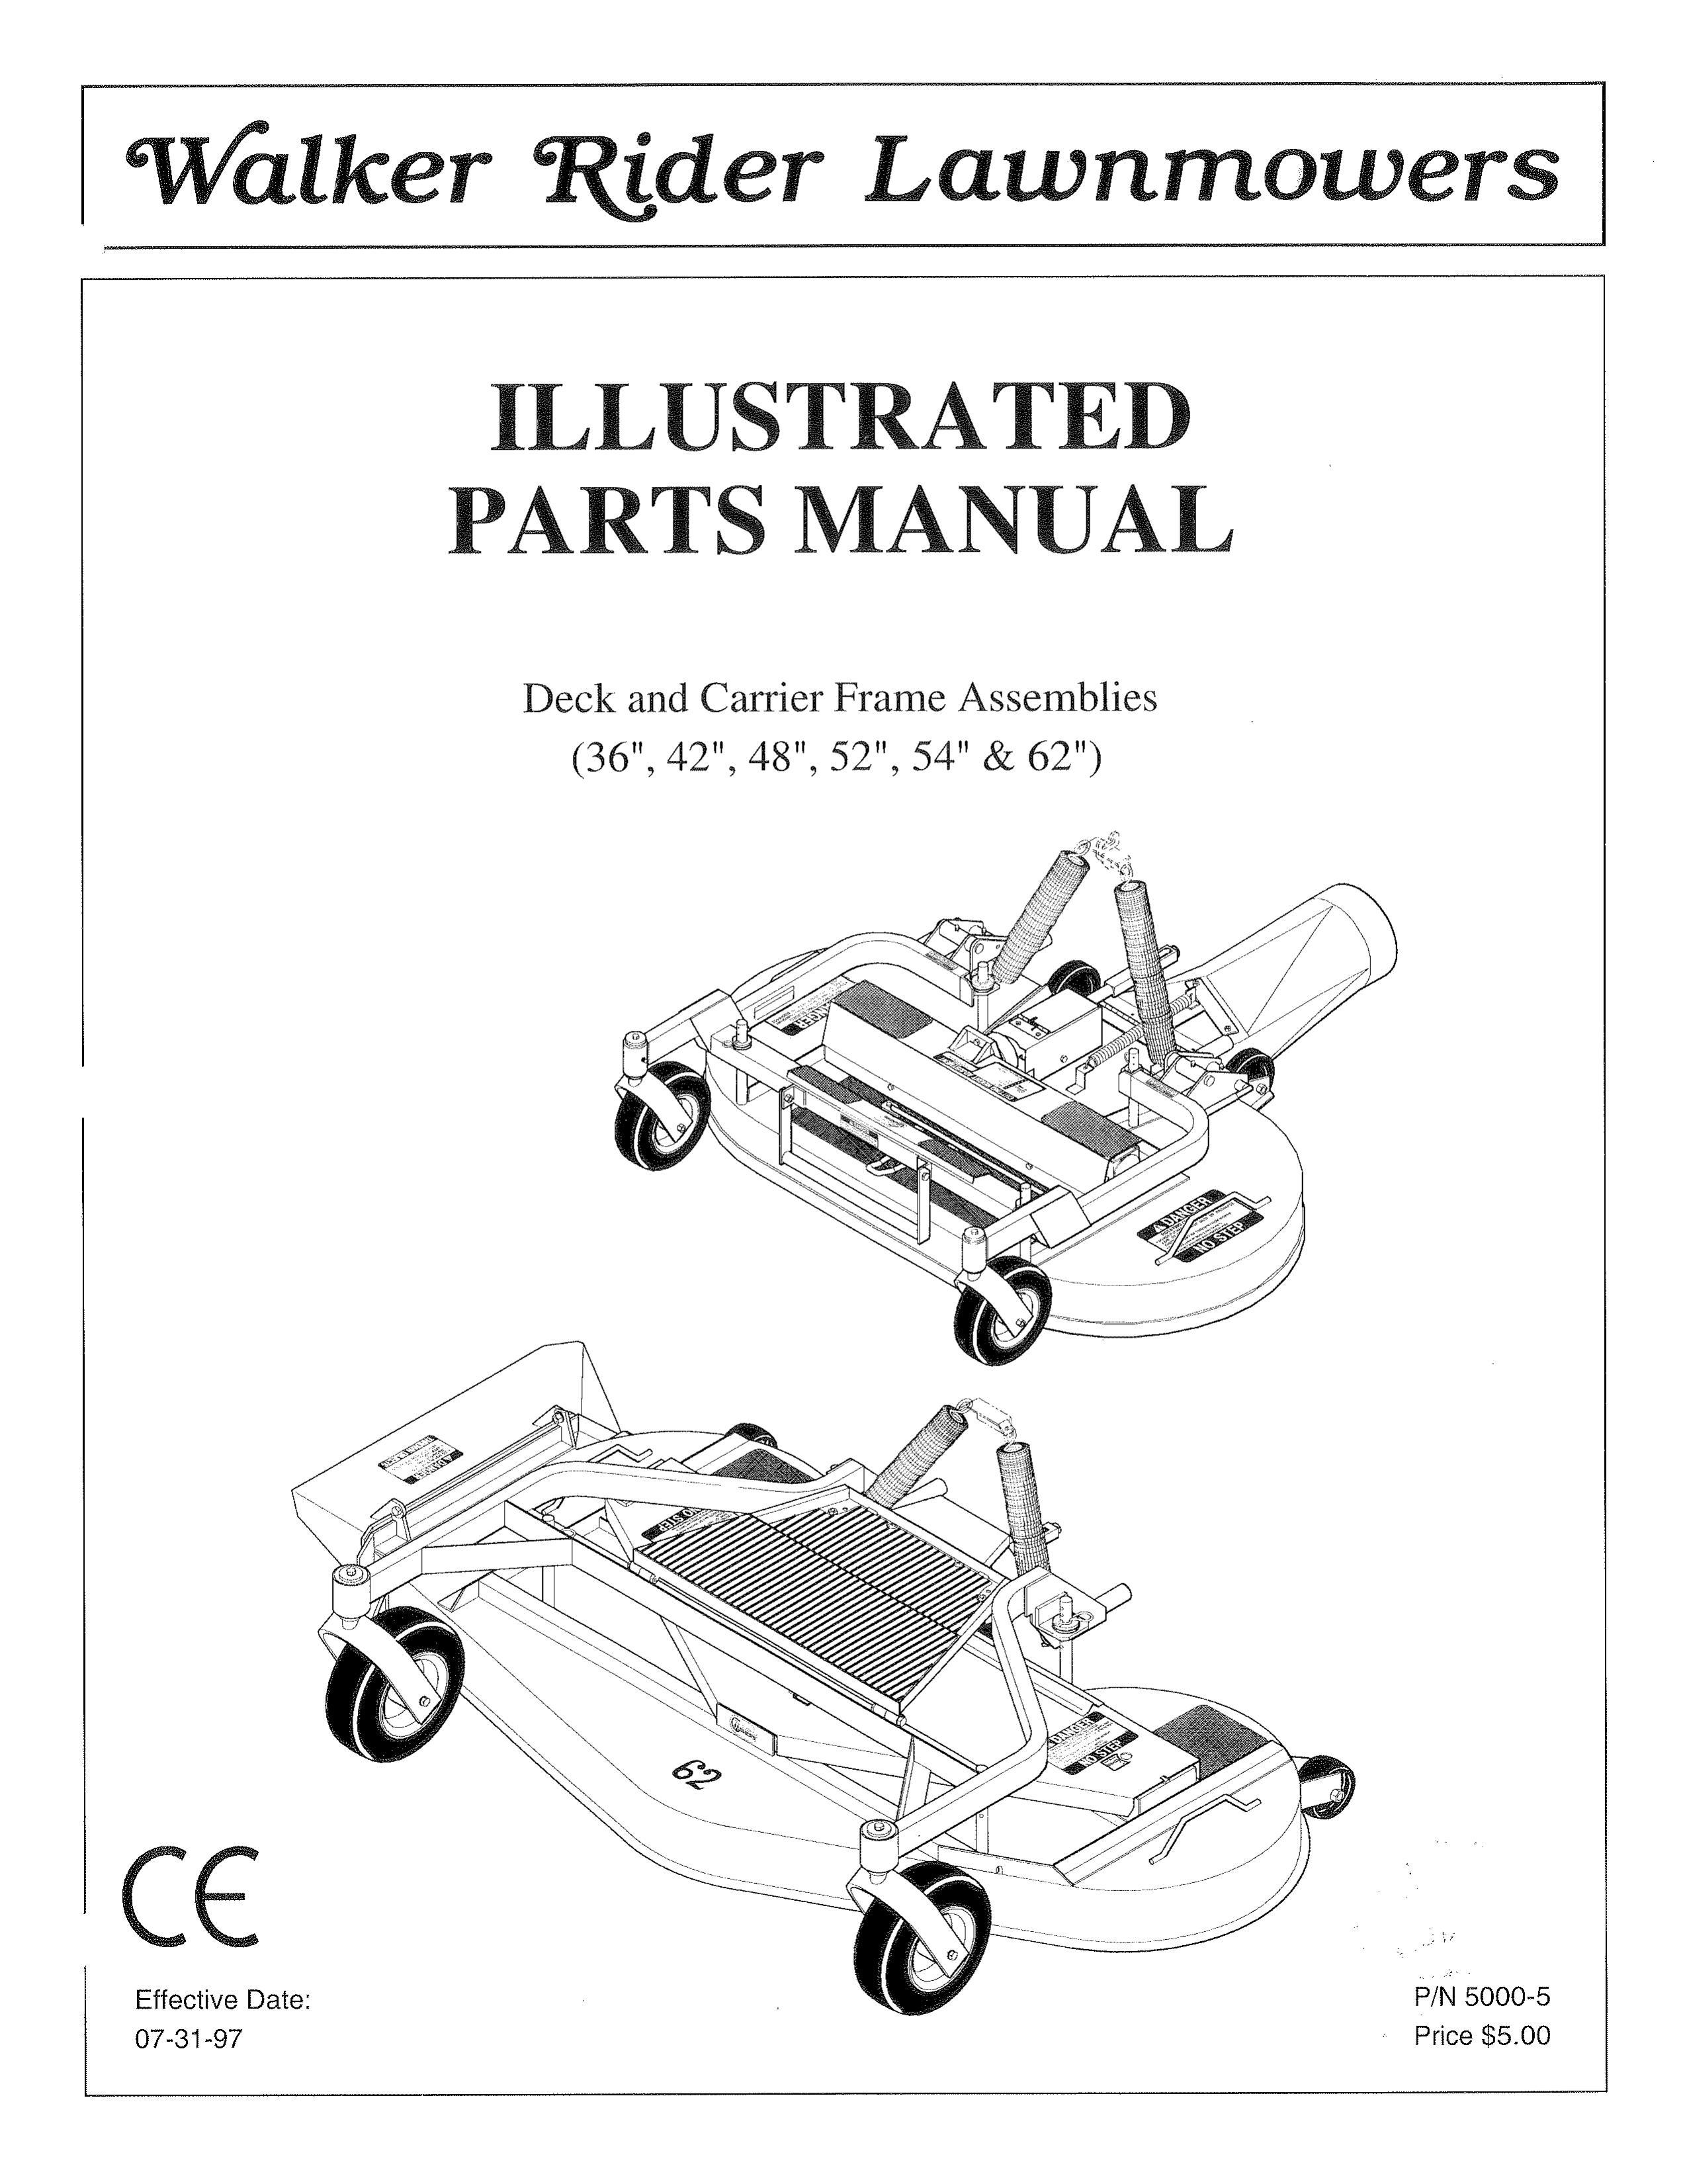 Walker 54-inch Lawn Mower User Manual